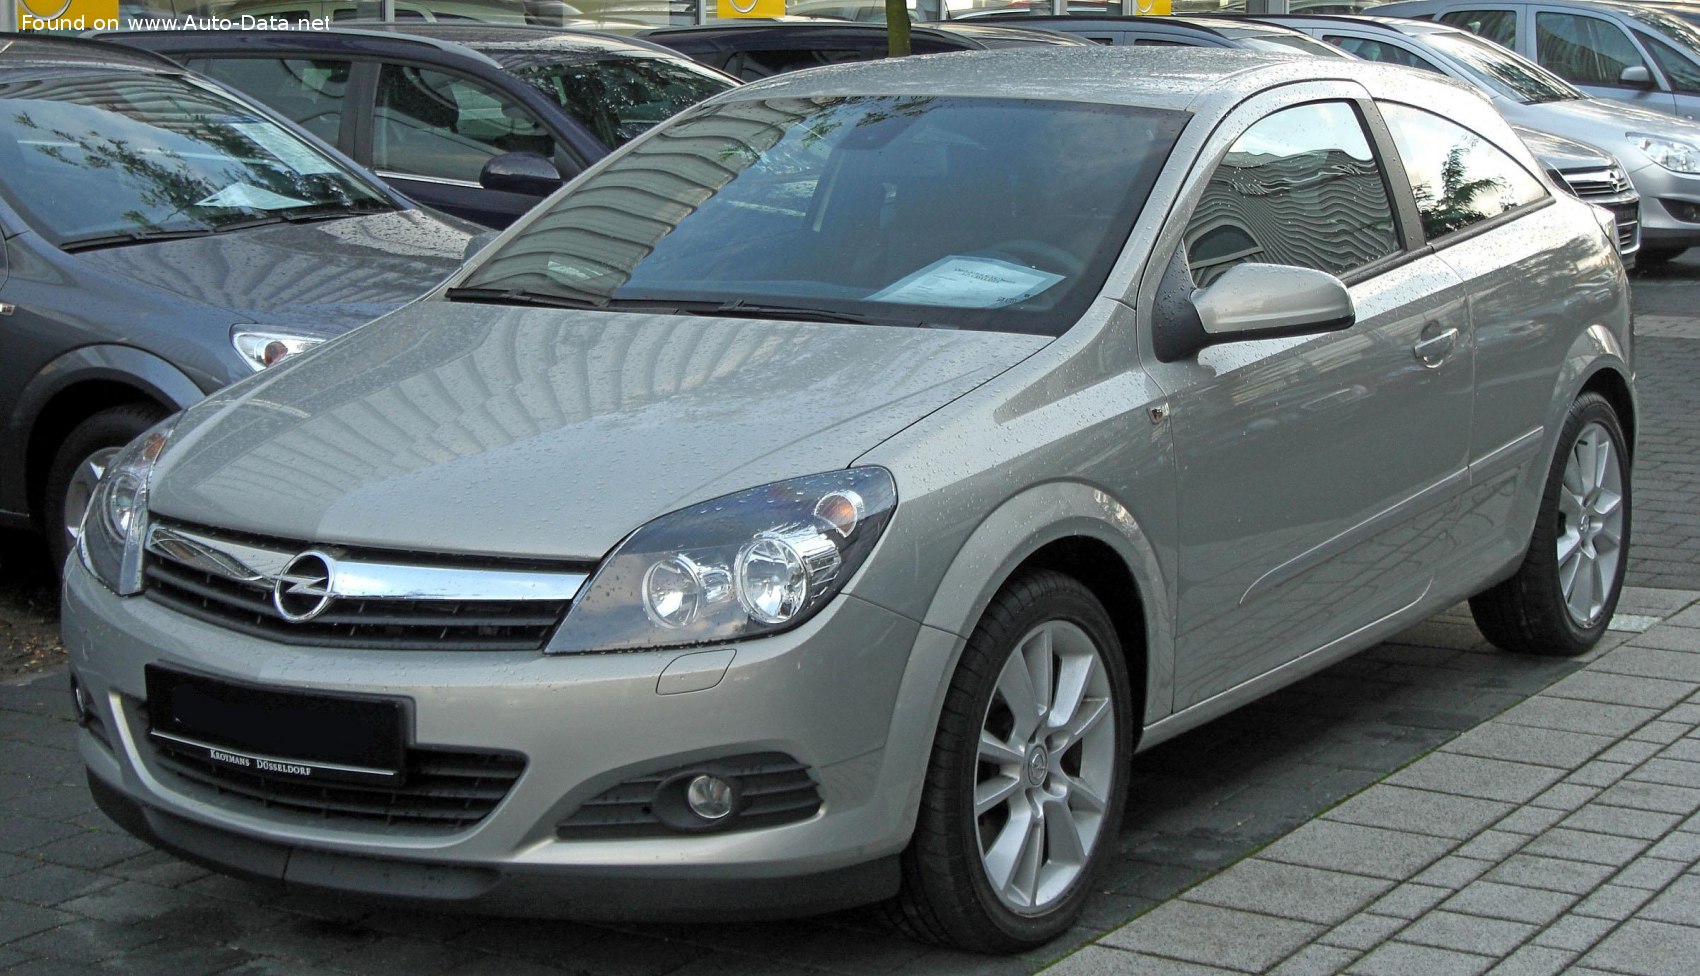 2005 Opel Astra H GTC 1.6i 16V (105 Hp) Automatic